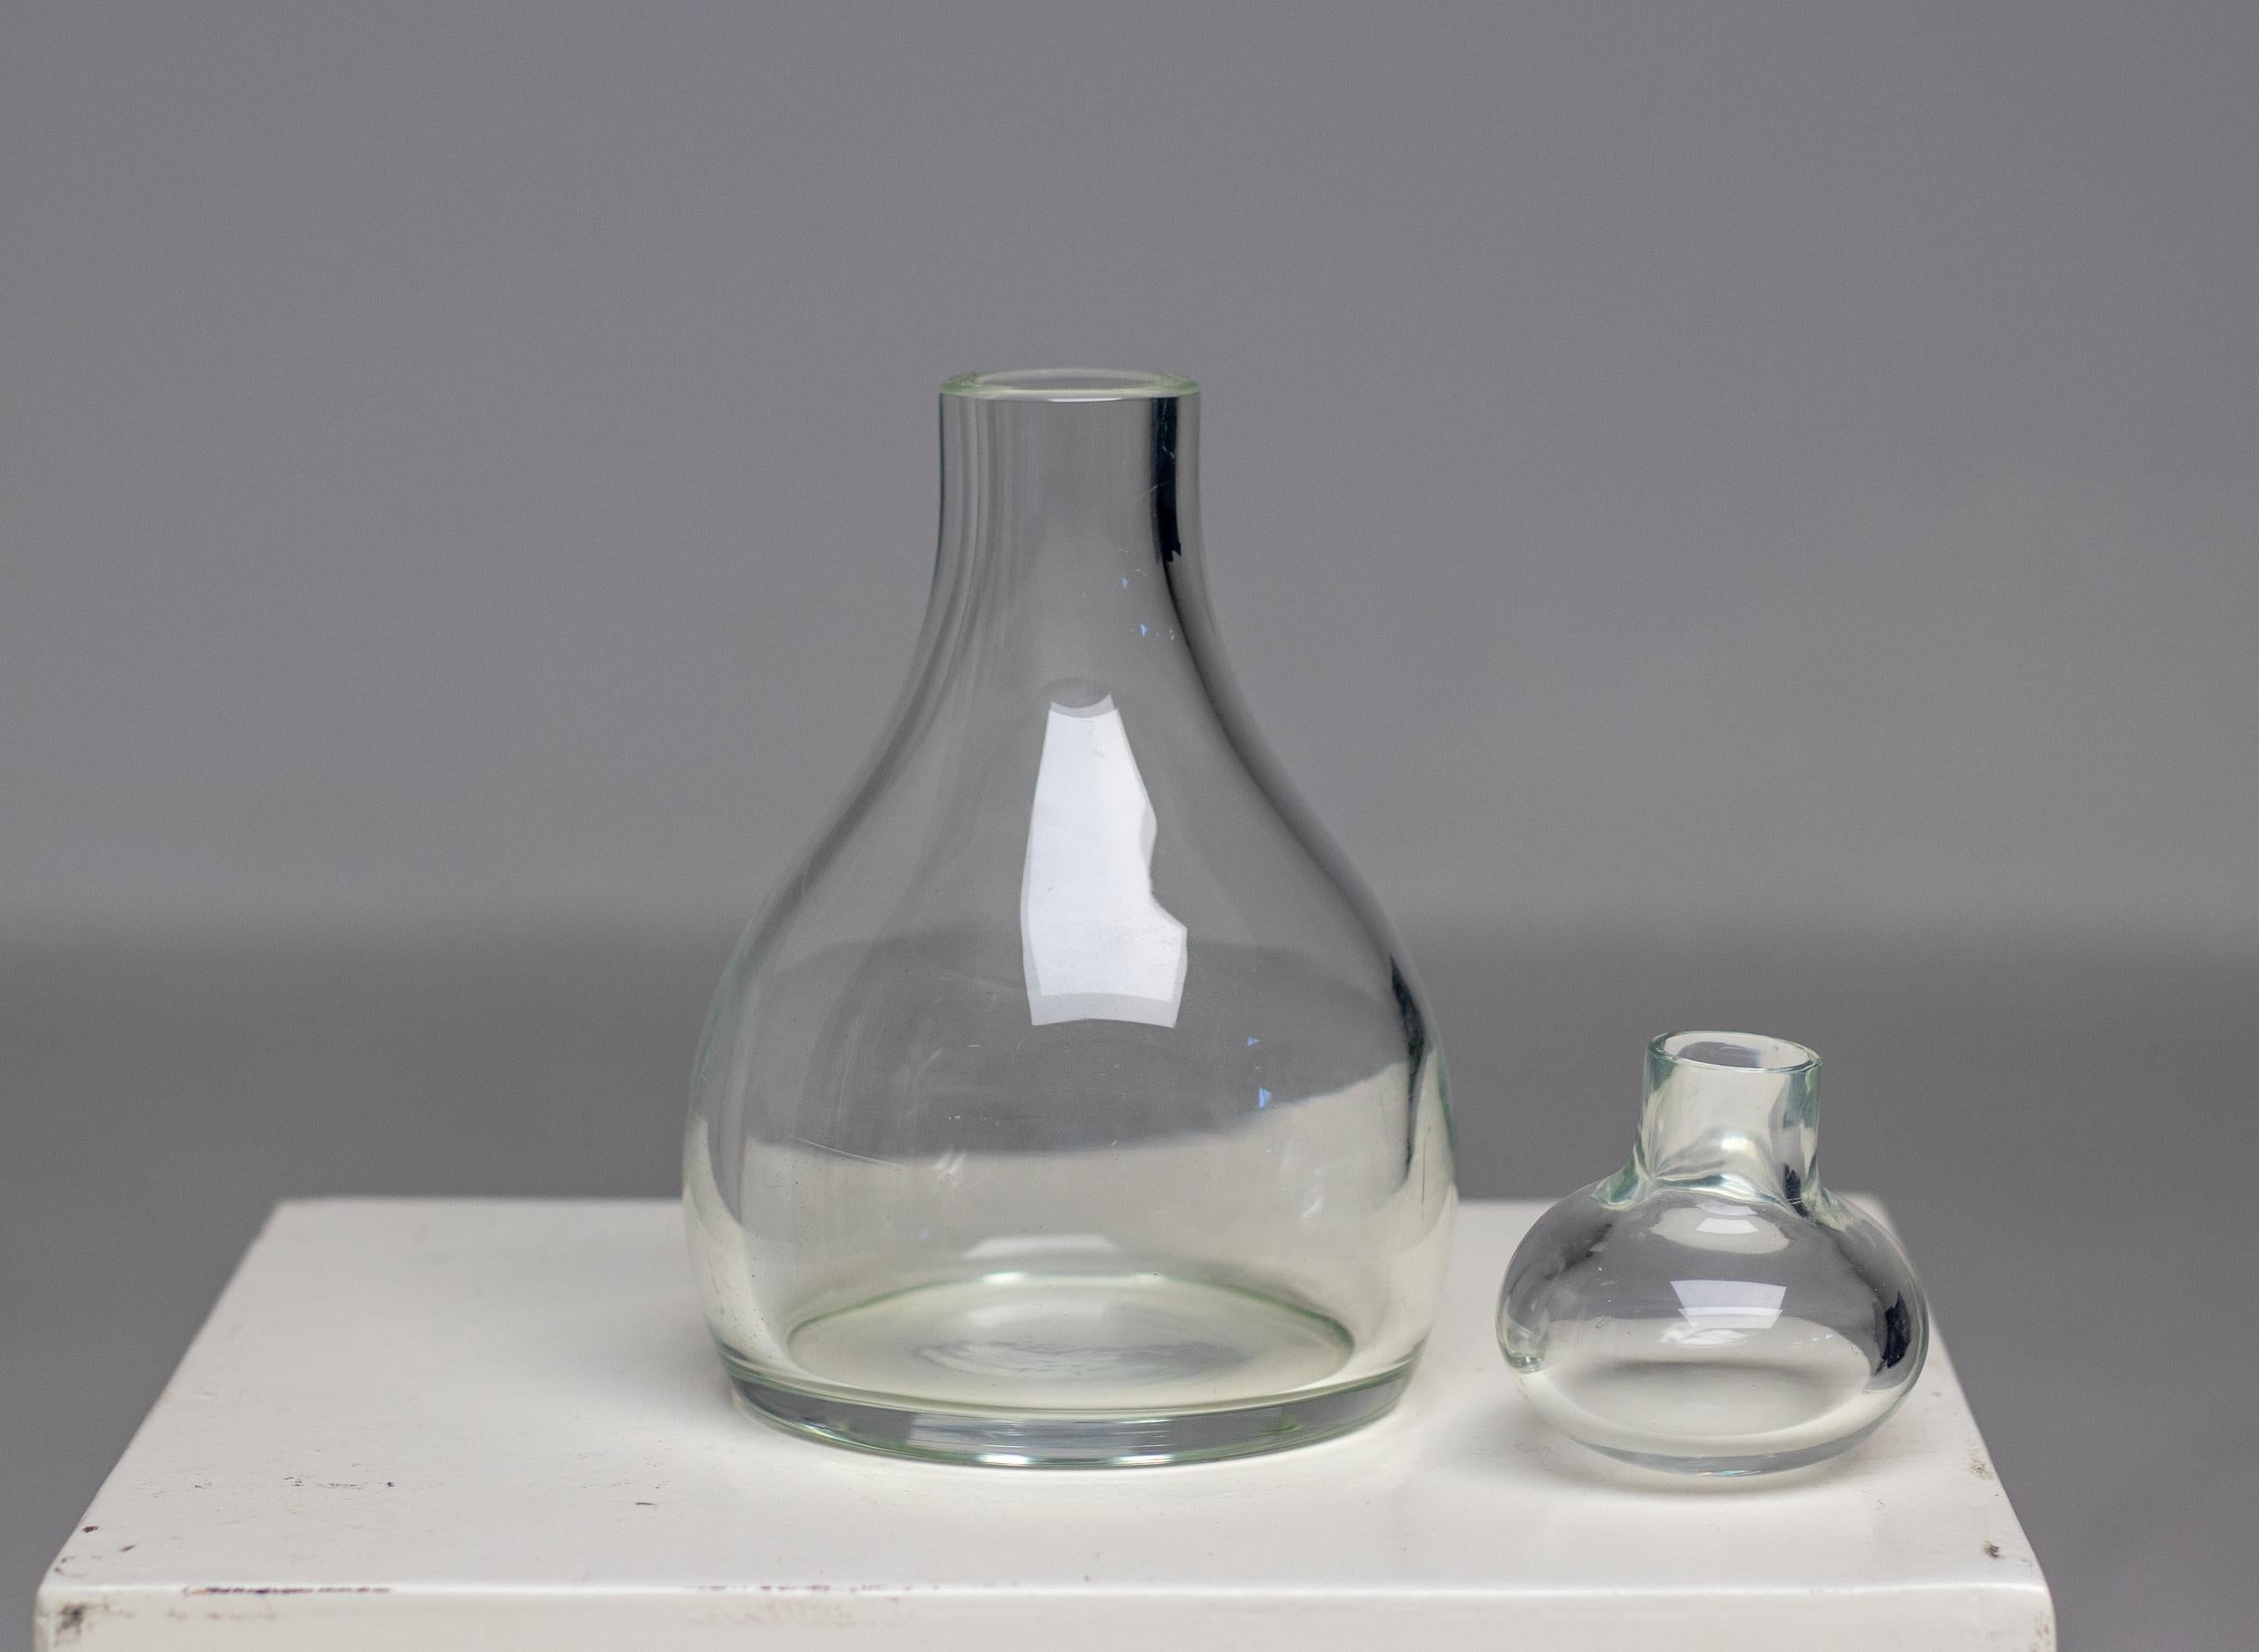 Seltene Flasche aus klarem Muranoglas mit Stopfen, entworfen um 1970 von Salviati, Murano, Italien.
Schöner Originalzustand, ein paar oberflächliche Kratzer an der Unterseite.
Unten signiert.

